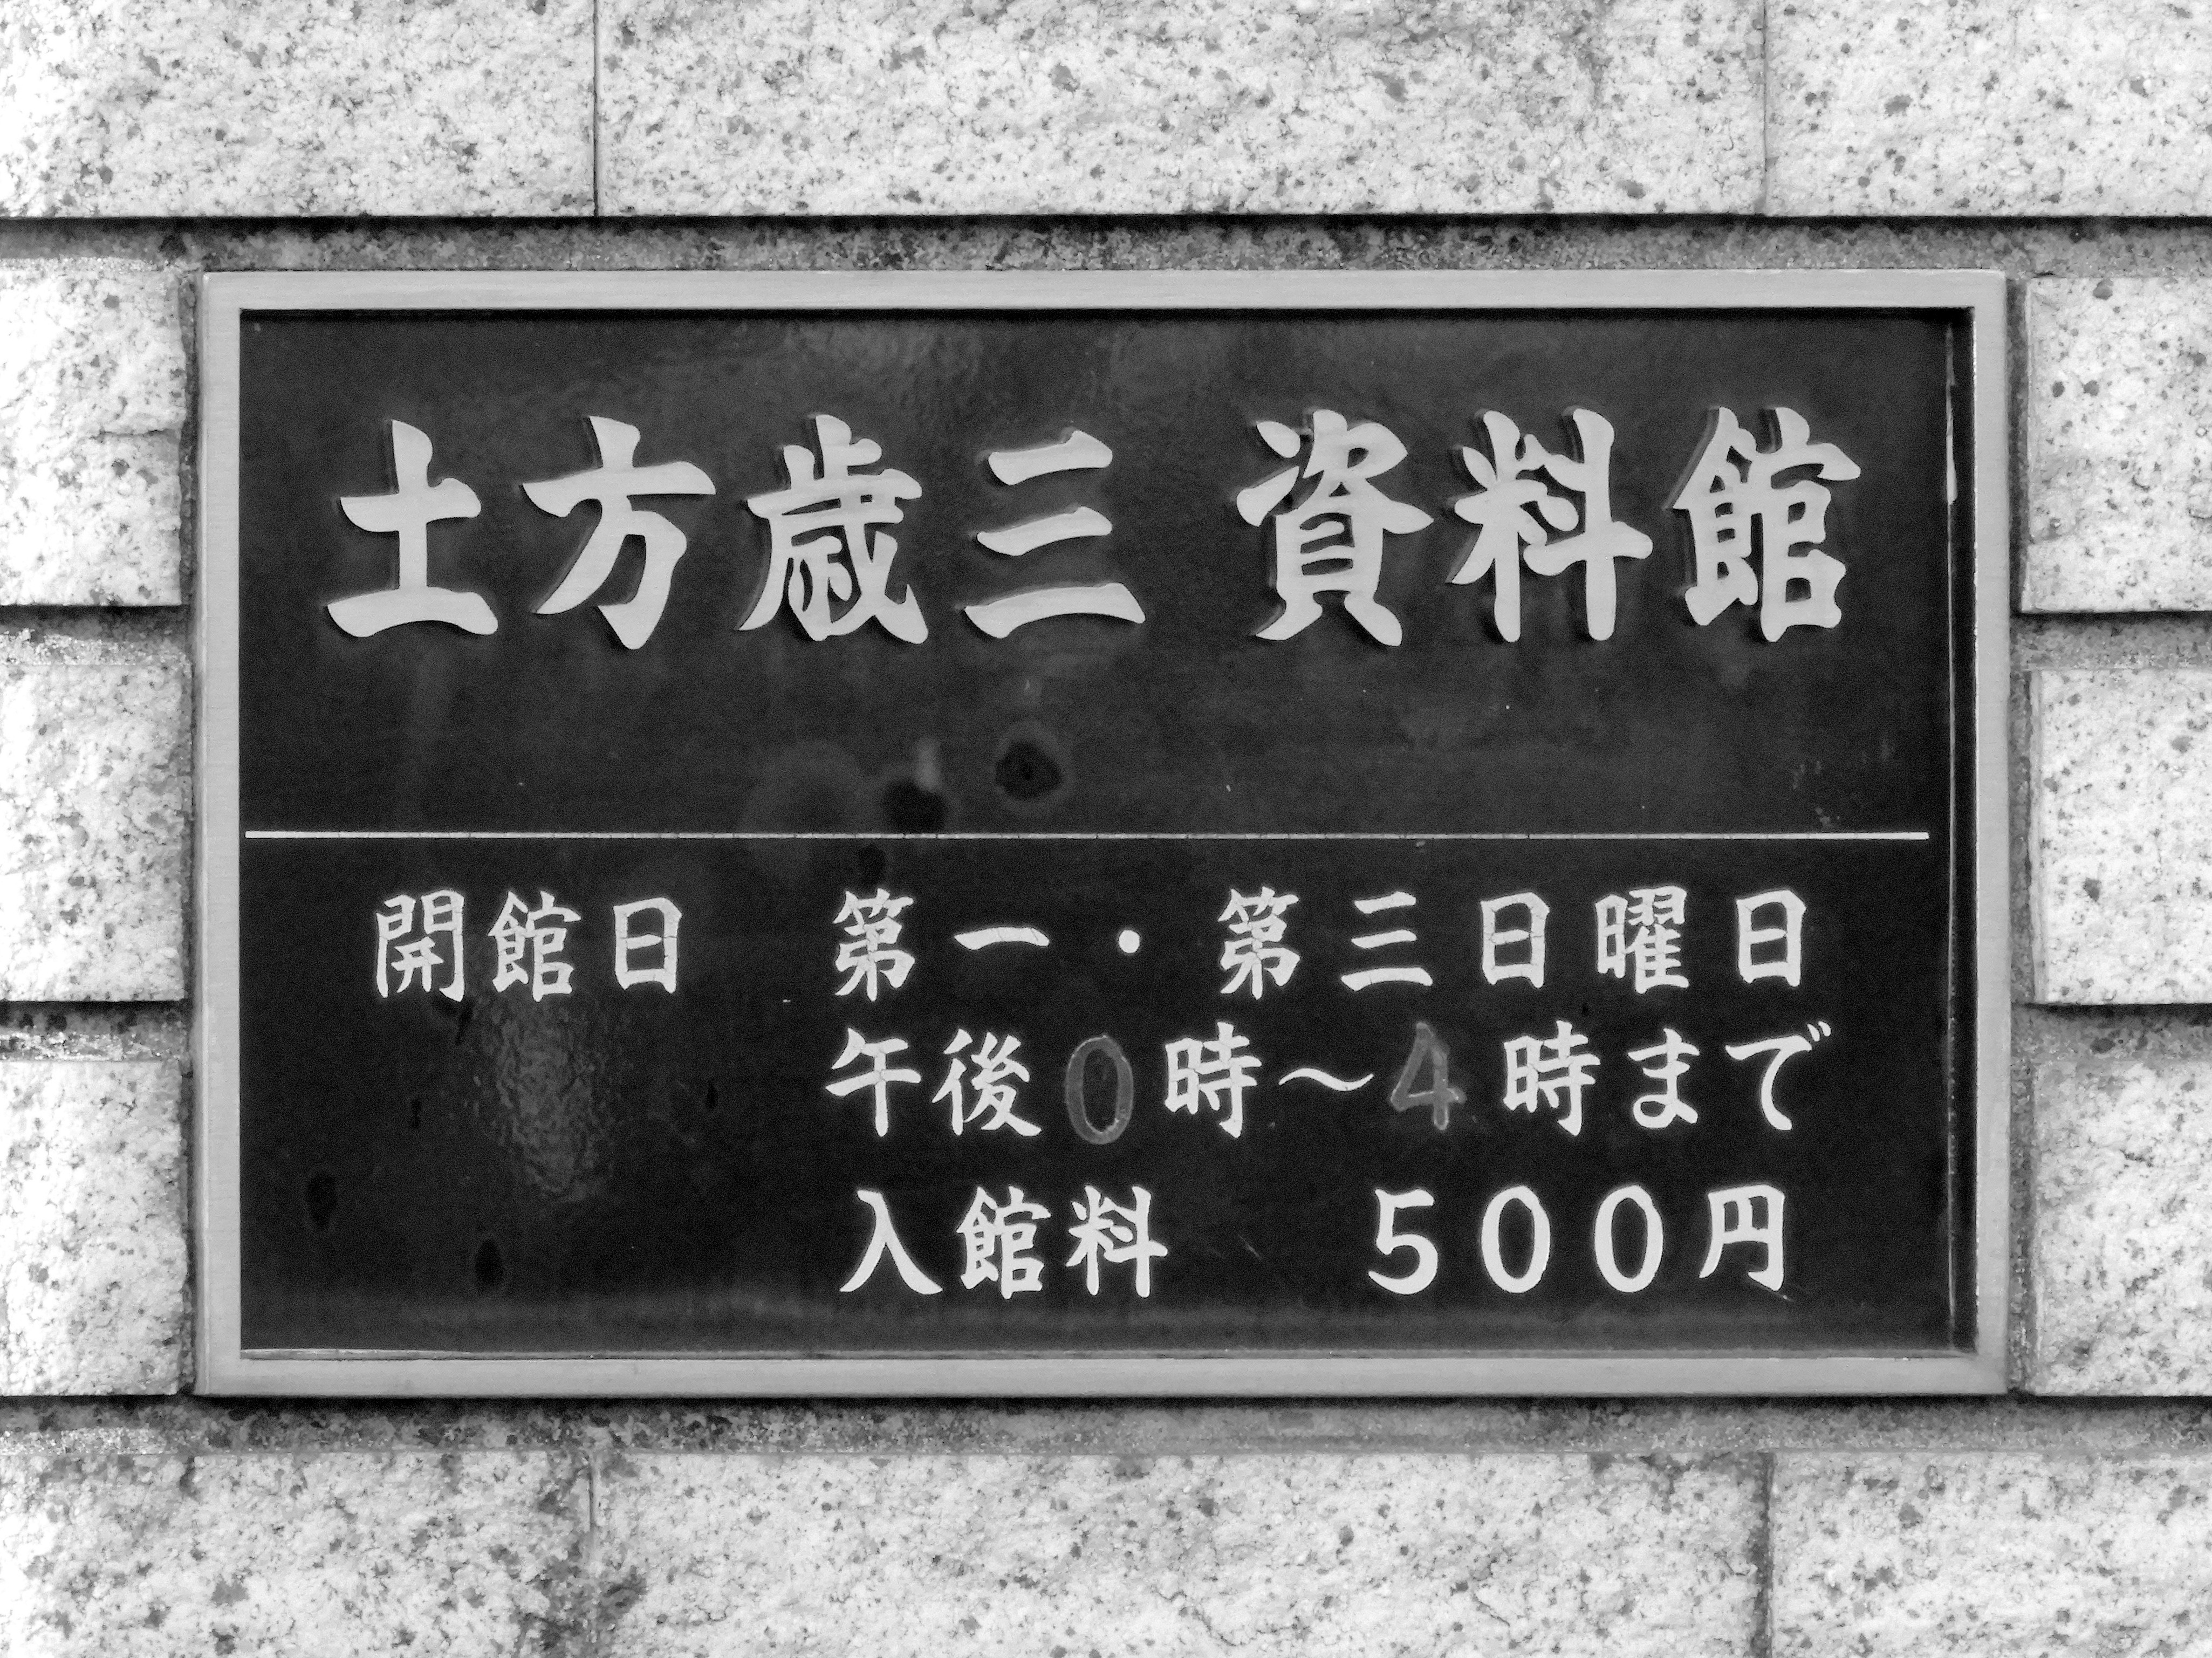 「土方歳三資料館」は11月28日に閉館しました。